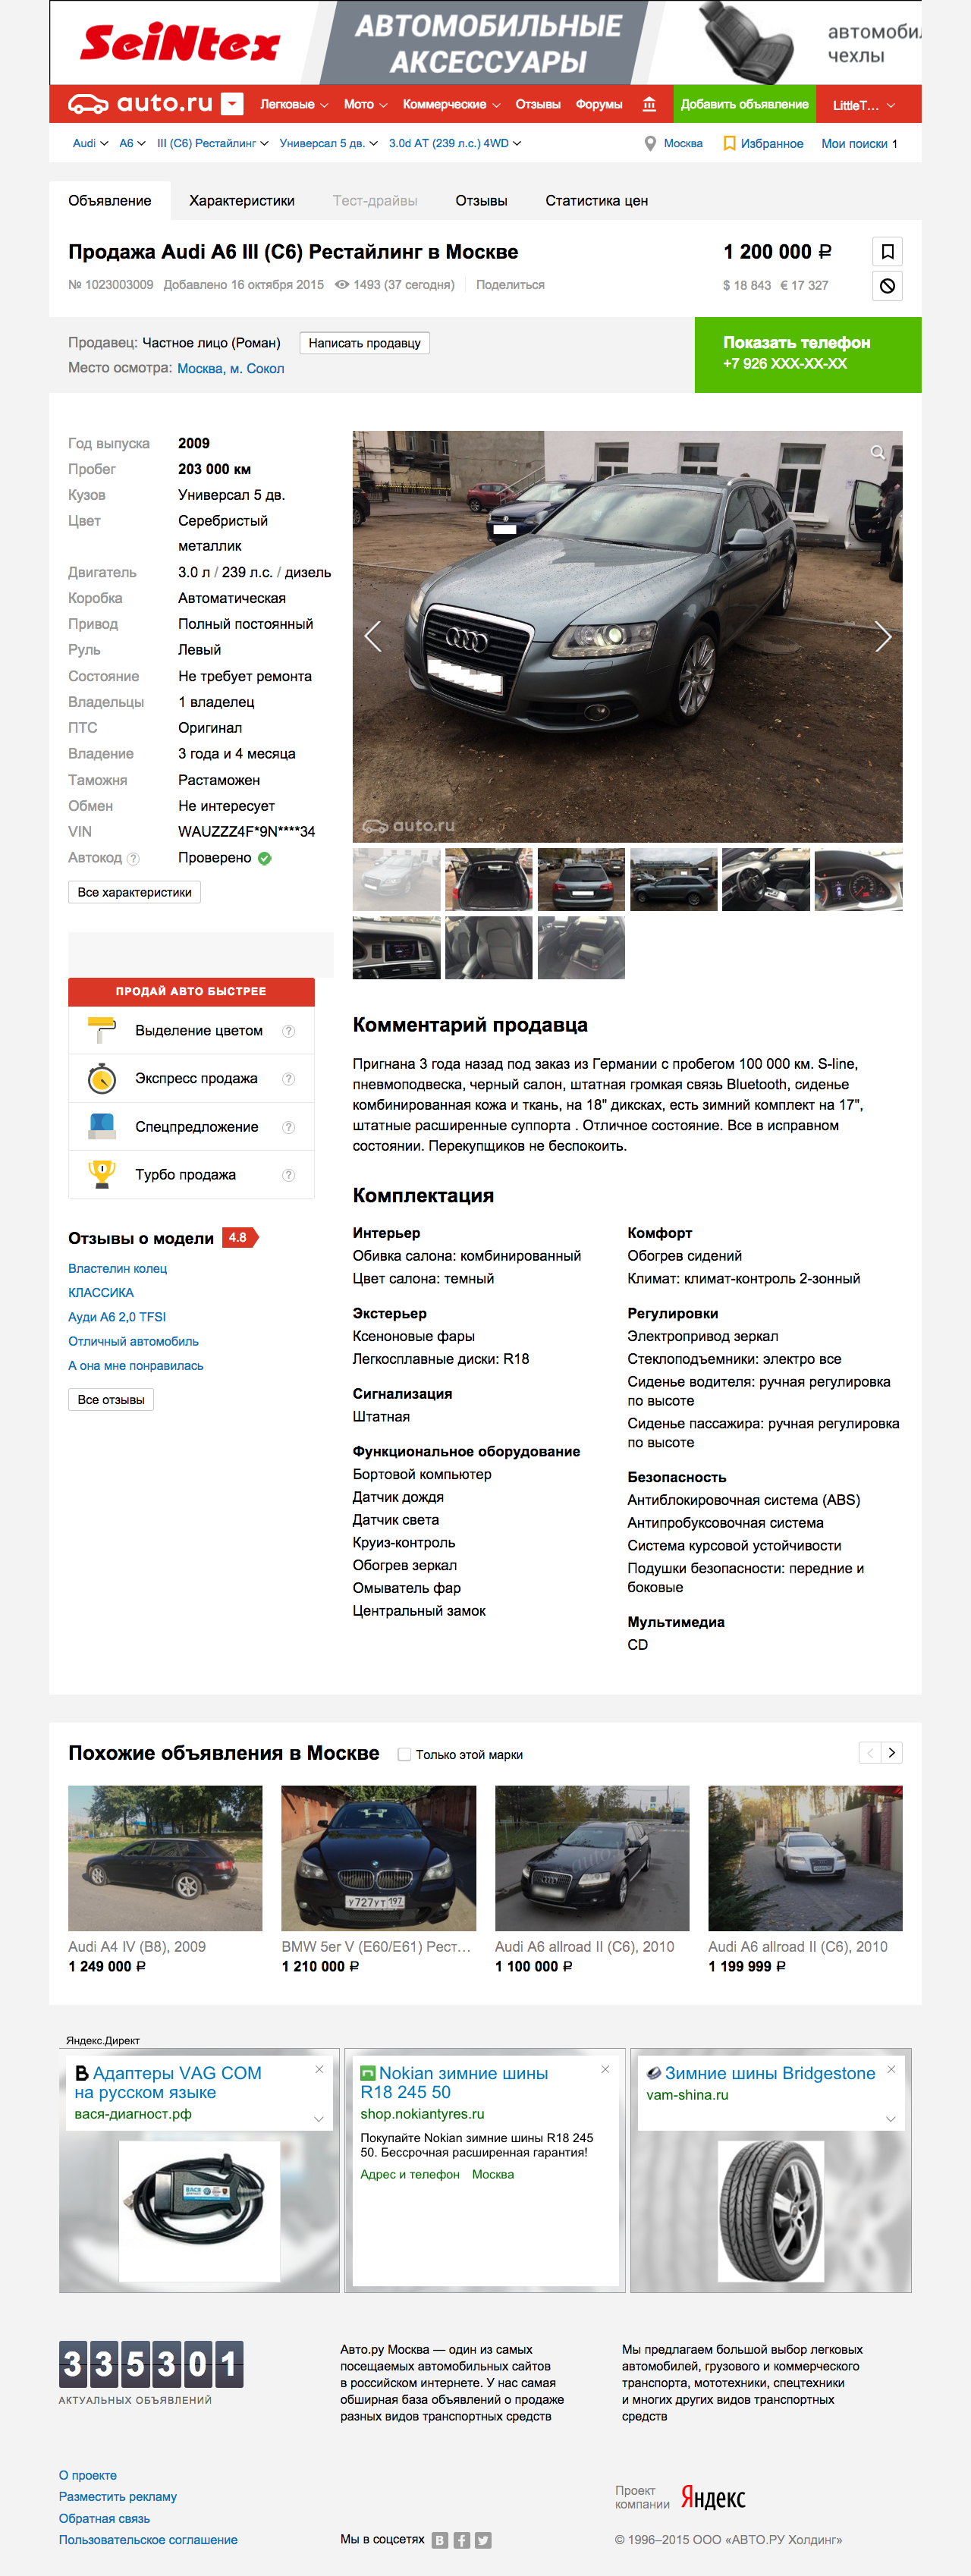 Объявление на auto.ru